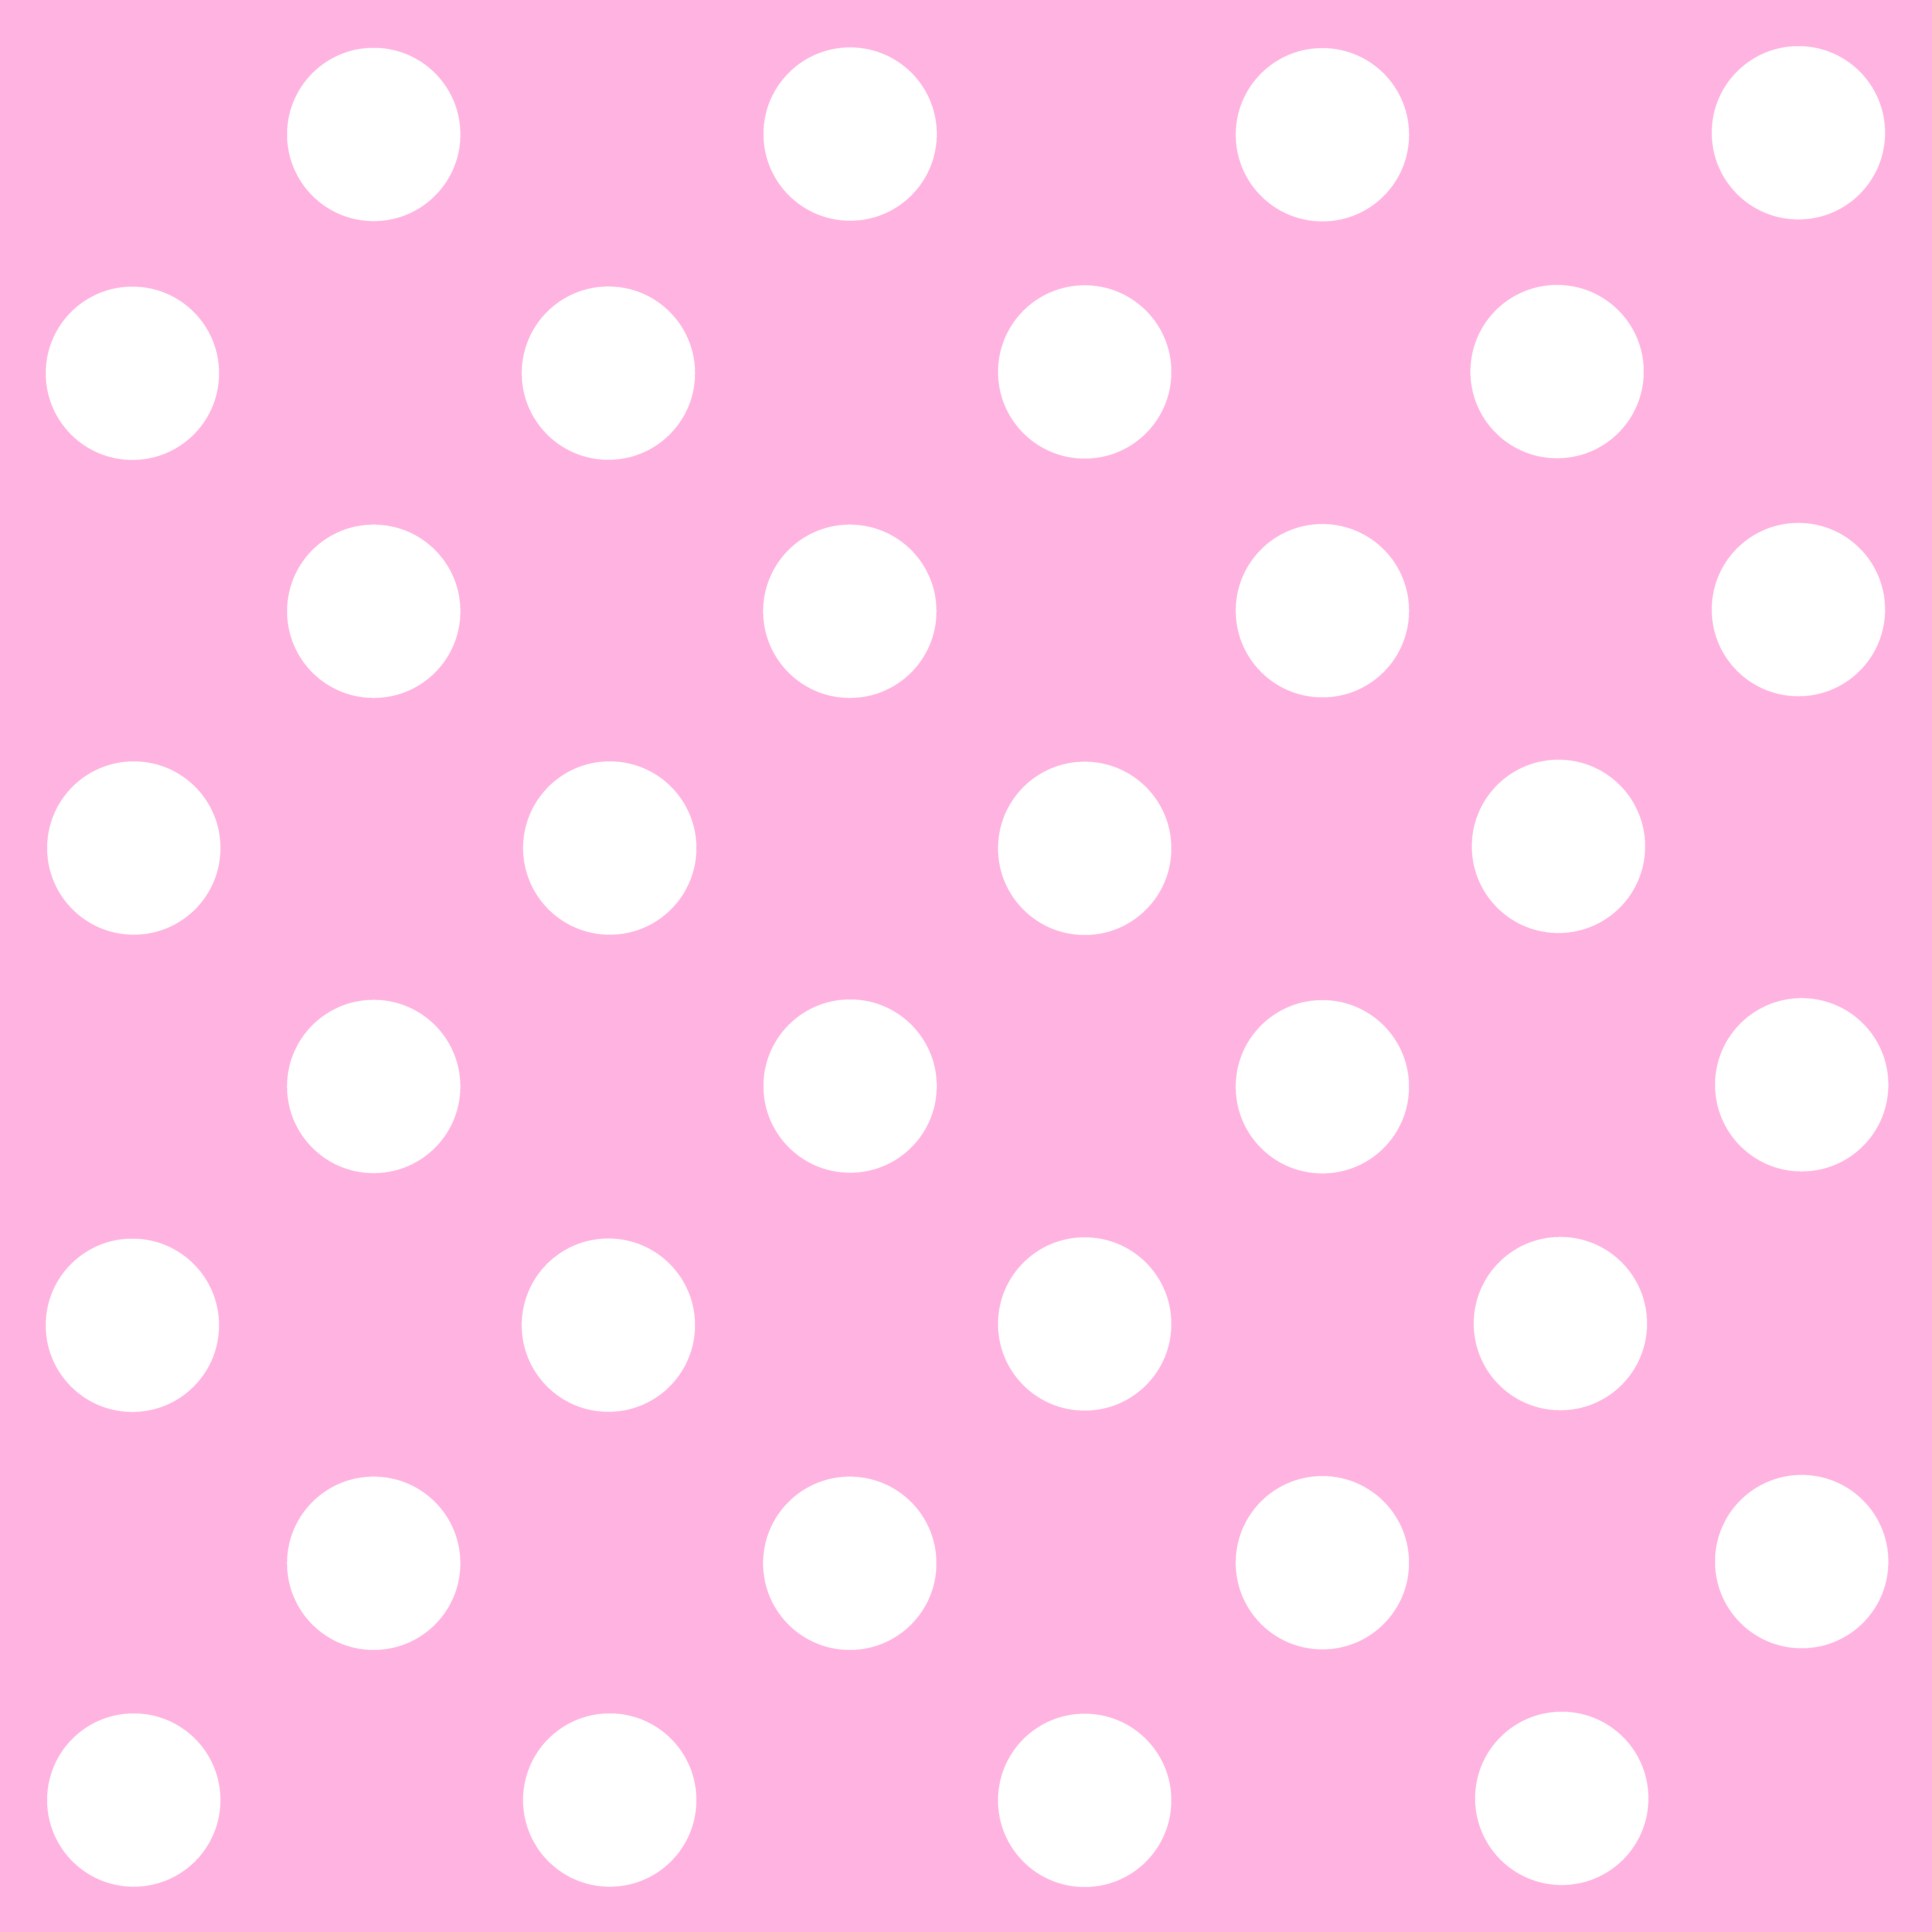 Red polka dot clip art - Clip